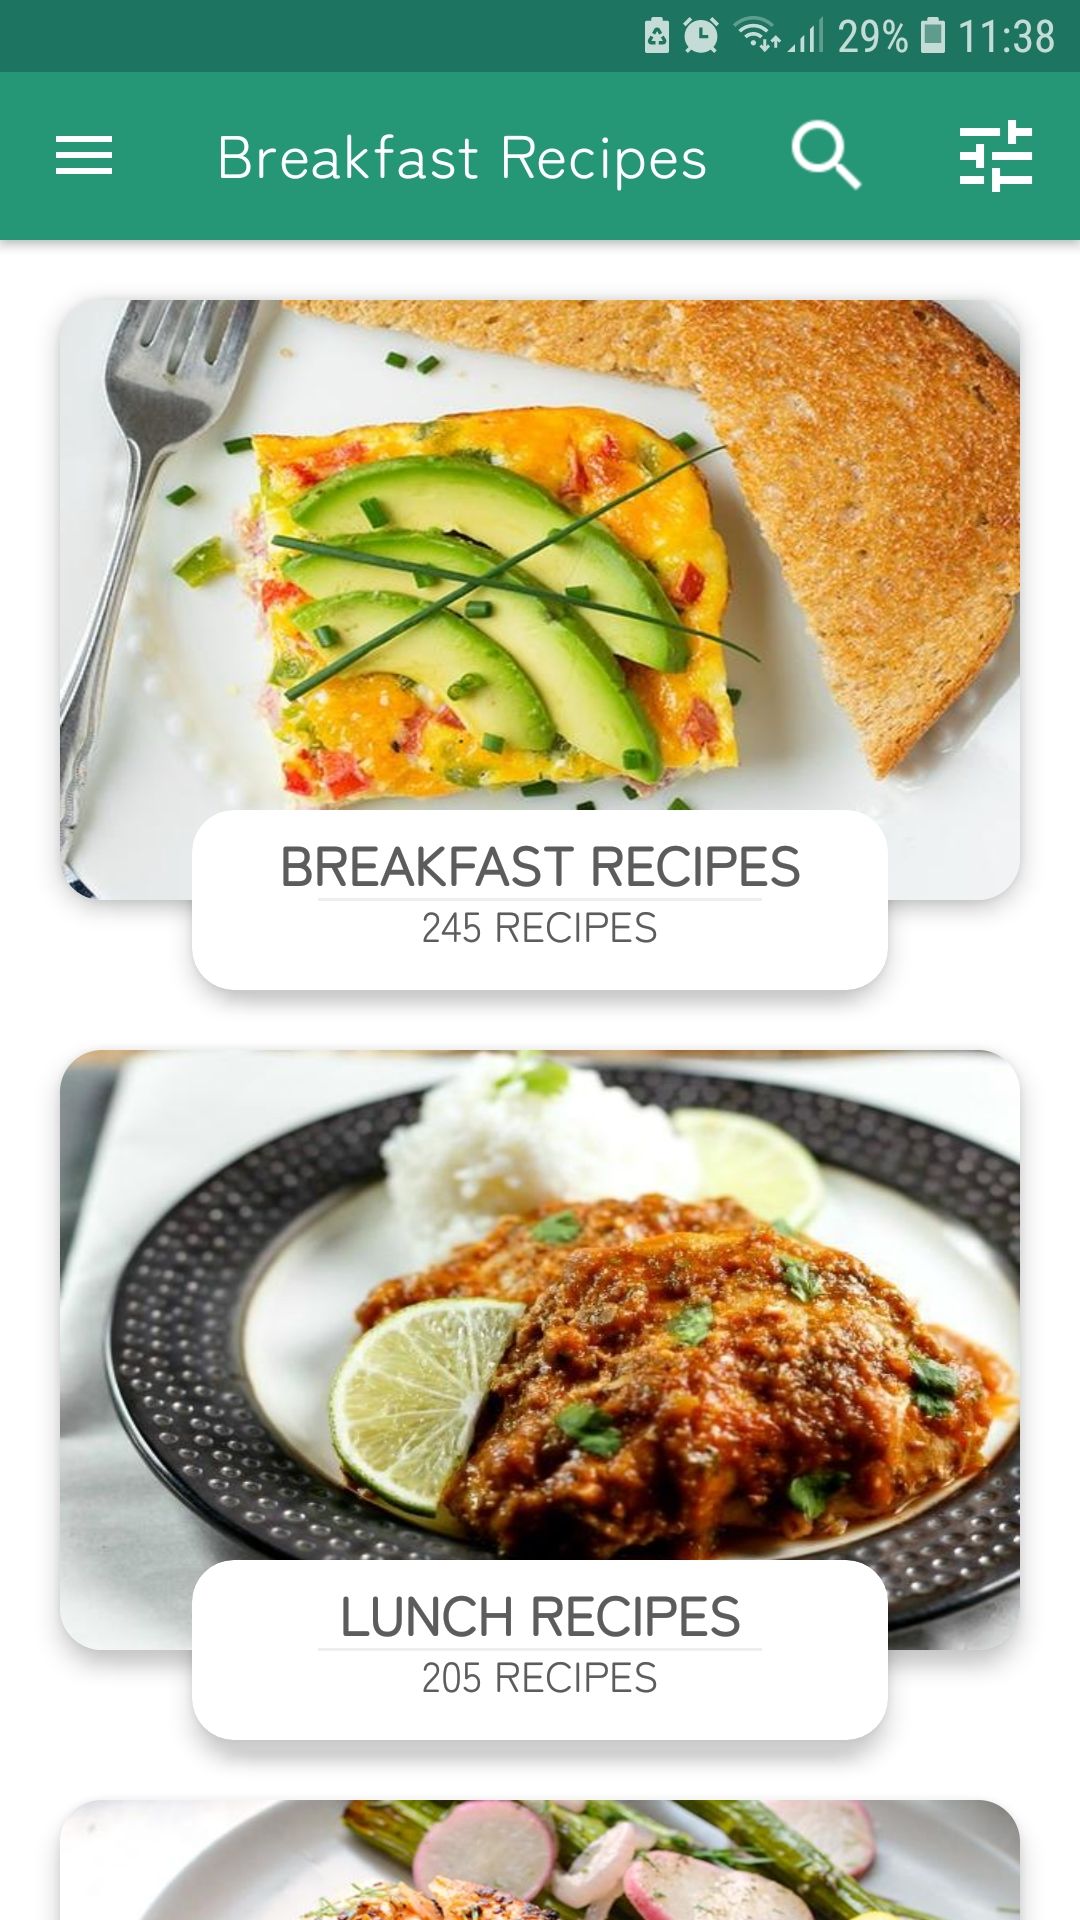 Keto Diet Recipes breakfast recipes